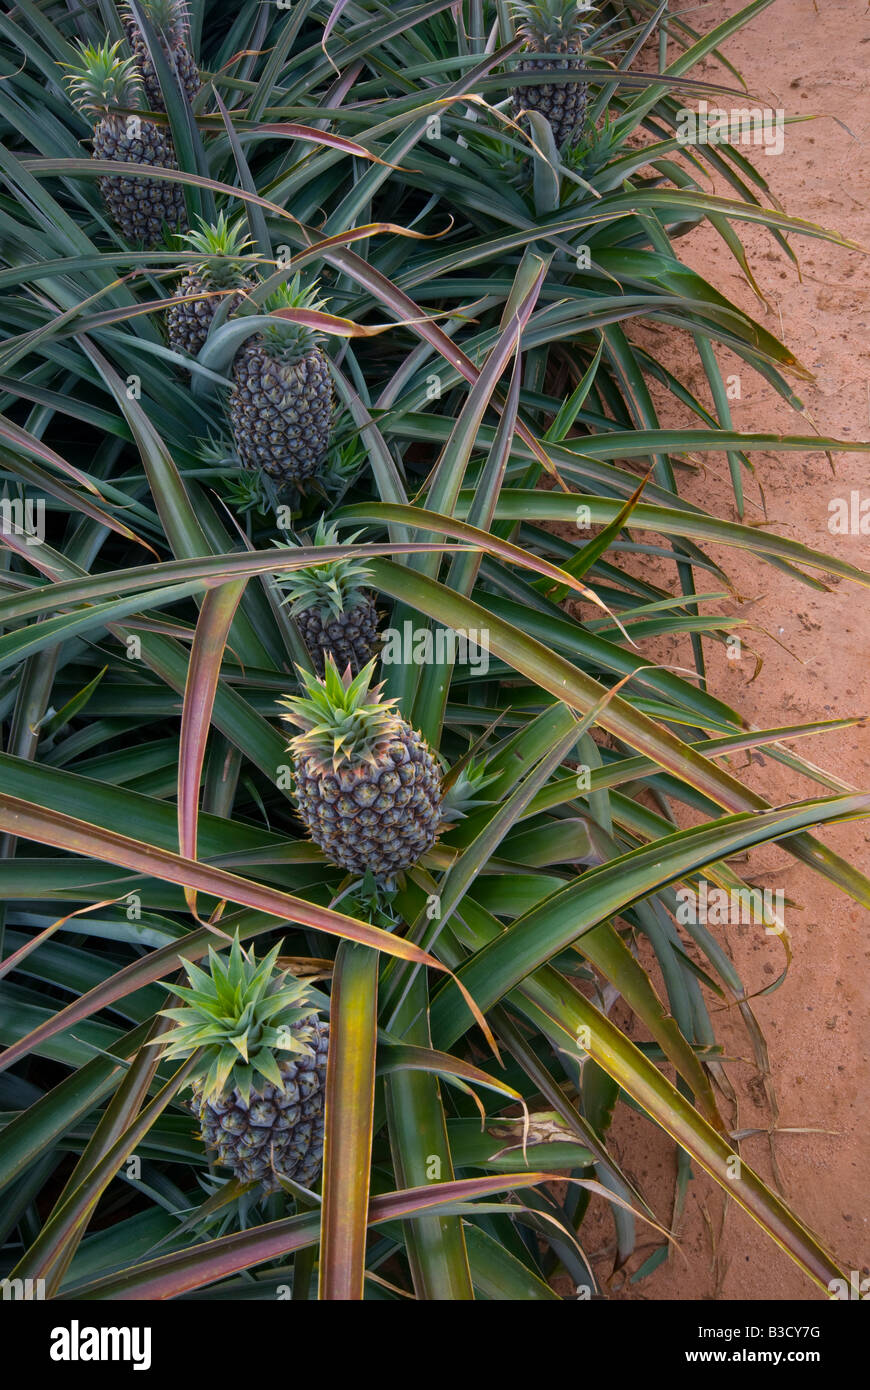 Pineapples growing in Queensland Australia Stock Photo